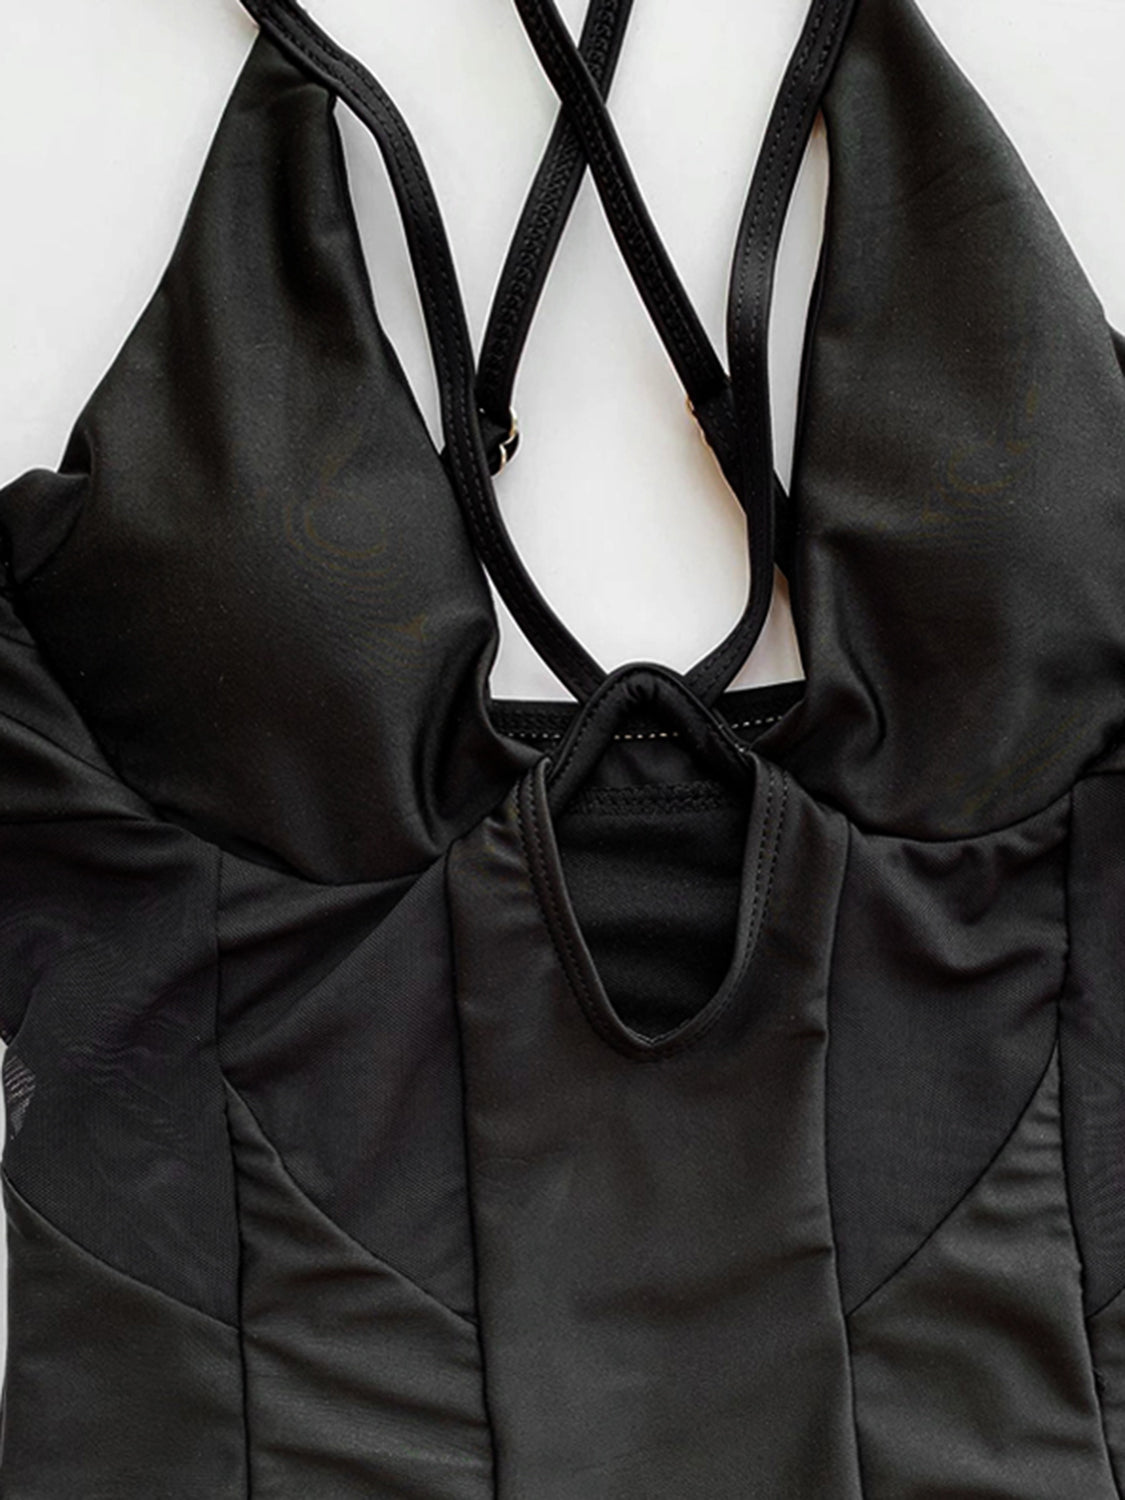 TEEK - Black Crisscross Spaghetti Strap One-Piece Swimwear SWIMWEAR TEEK Trend   